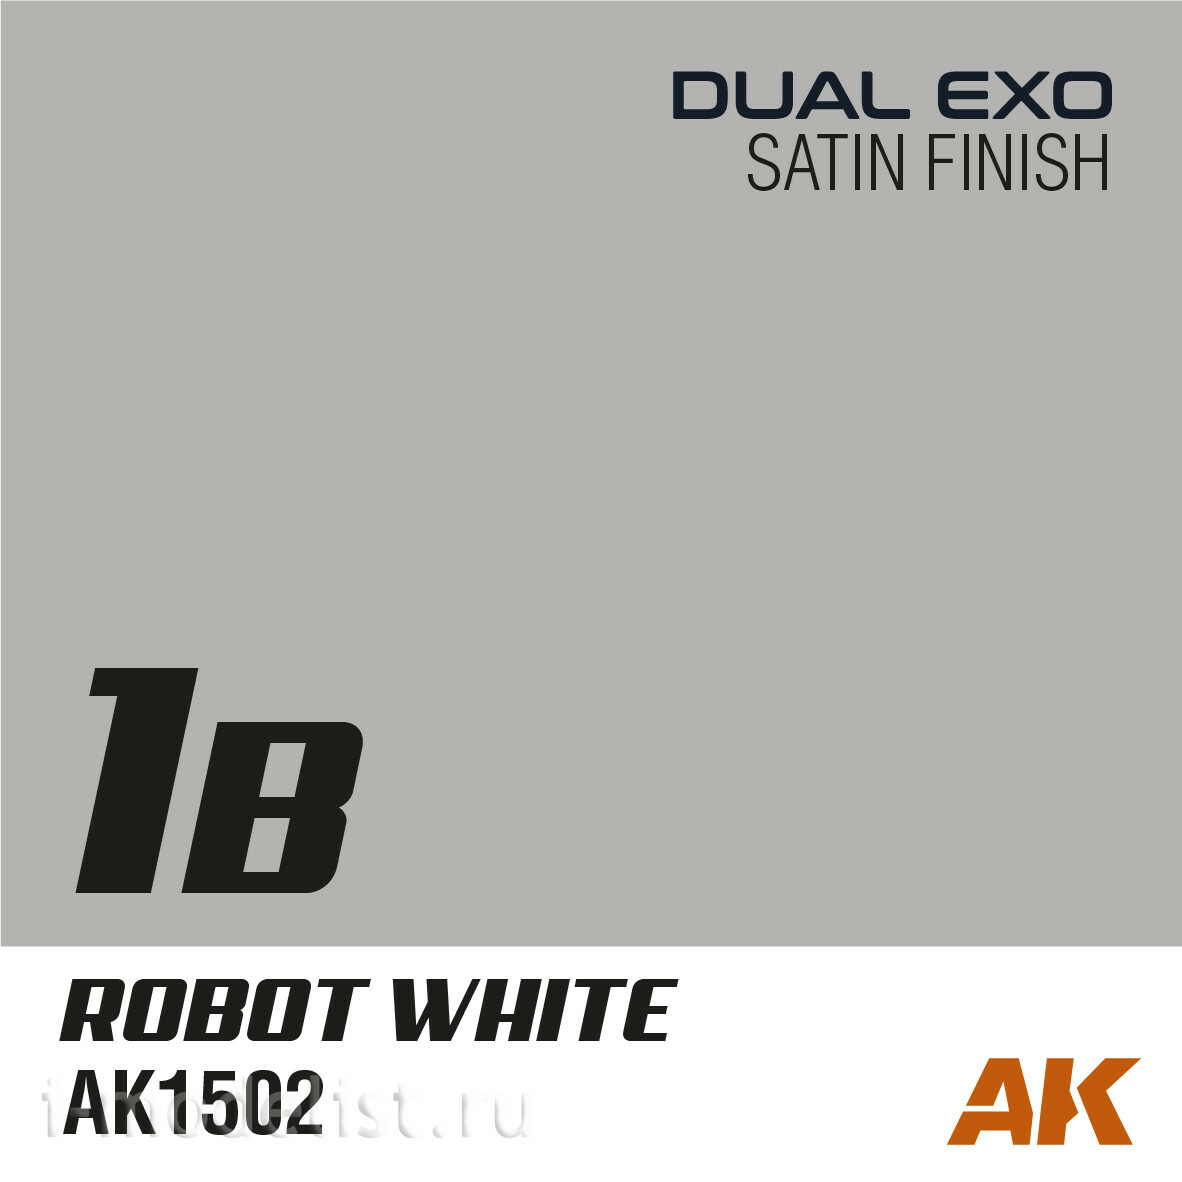 AK1543 AK Interactive Paint Set Dual Exo - 1A Extreme White & 1B Robotic White